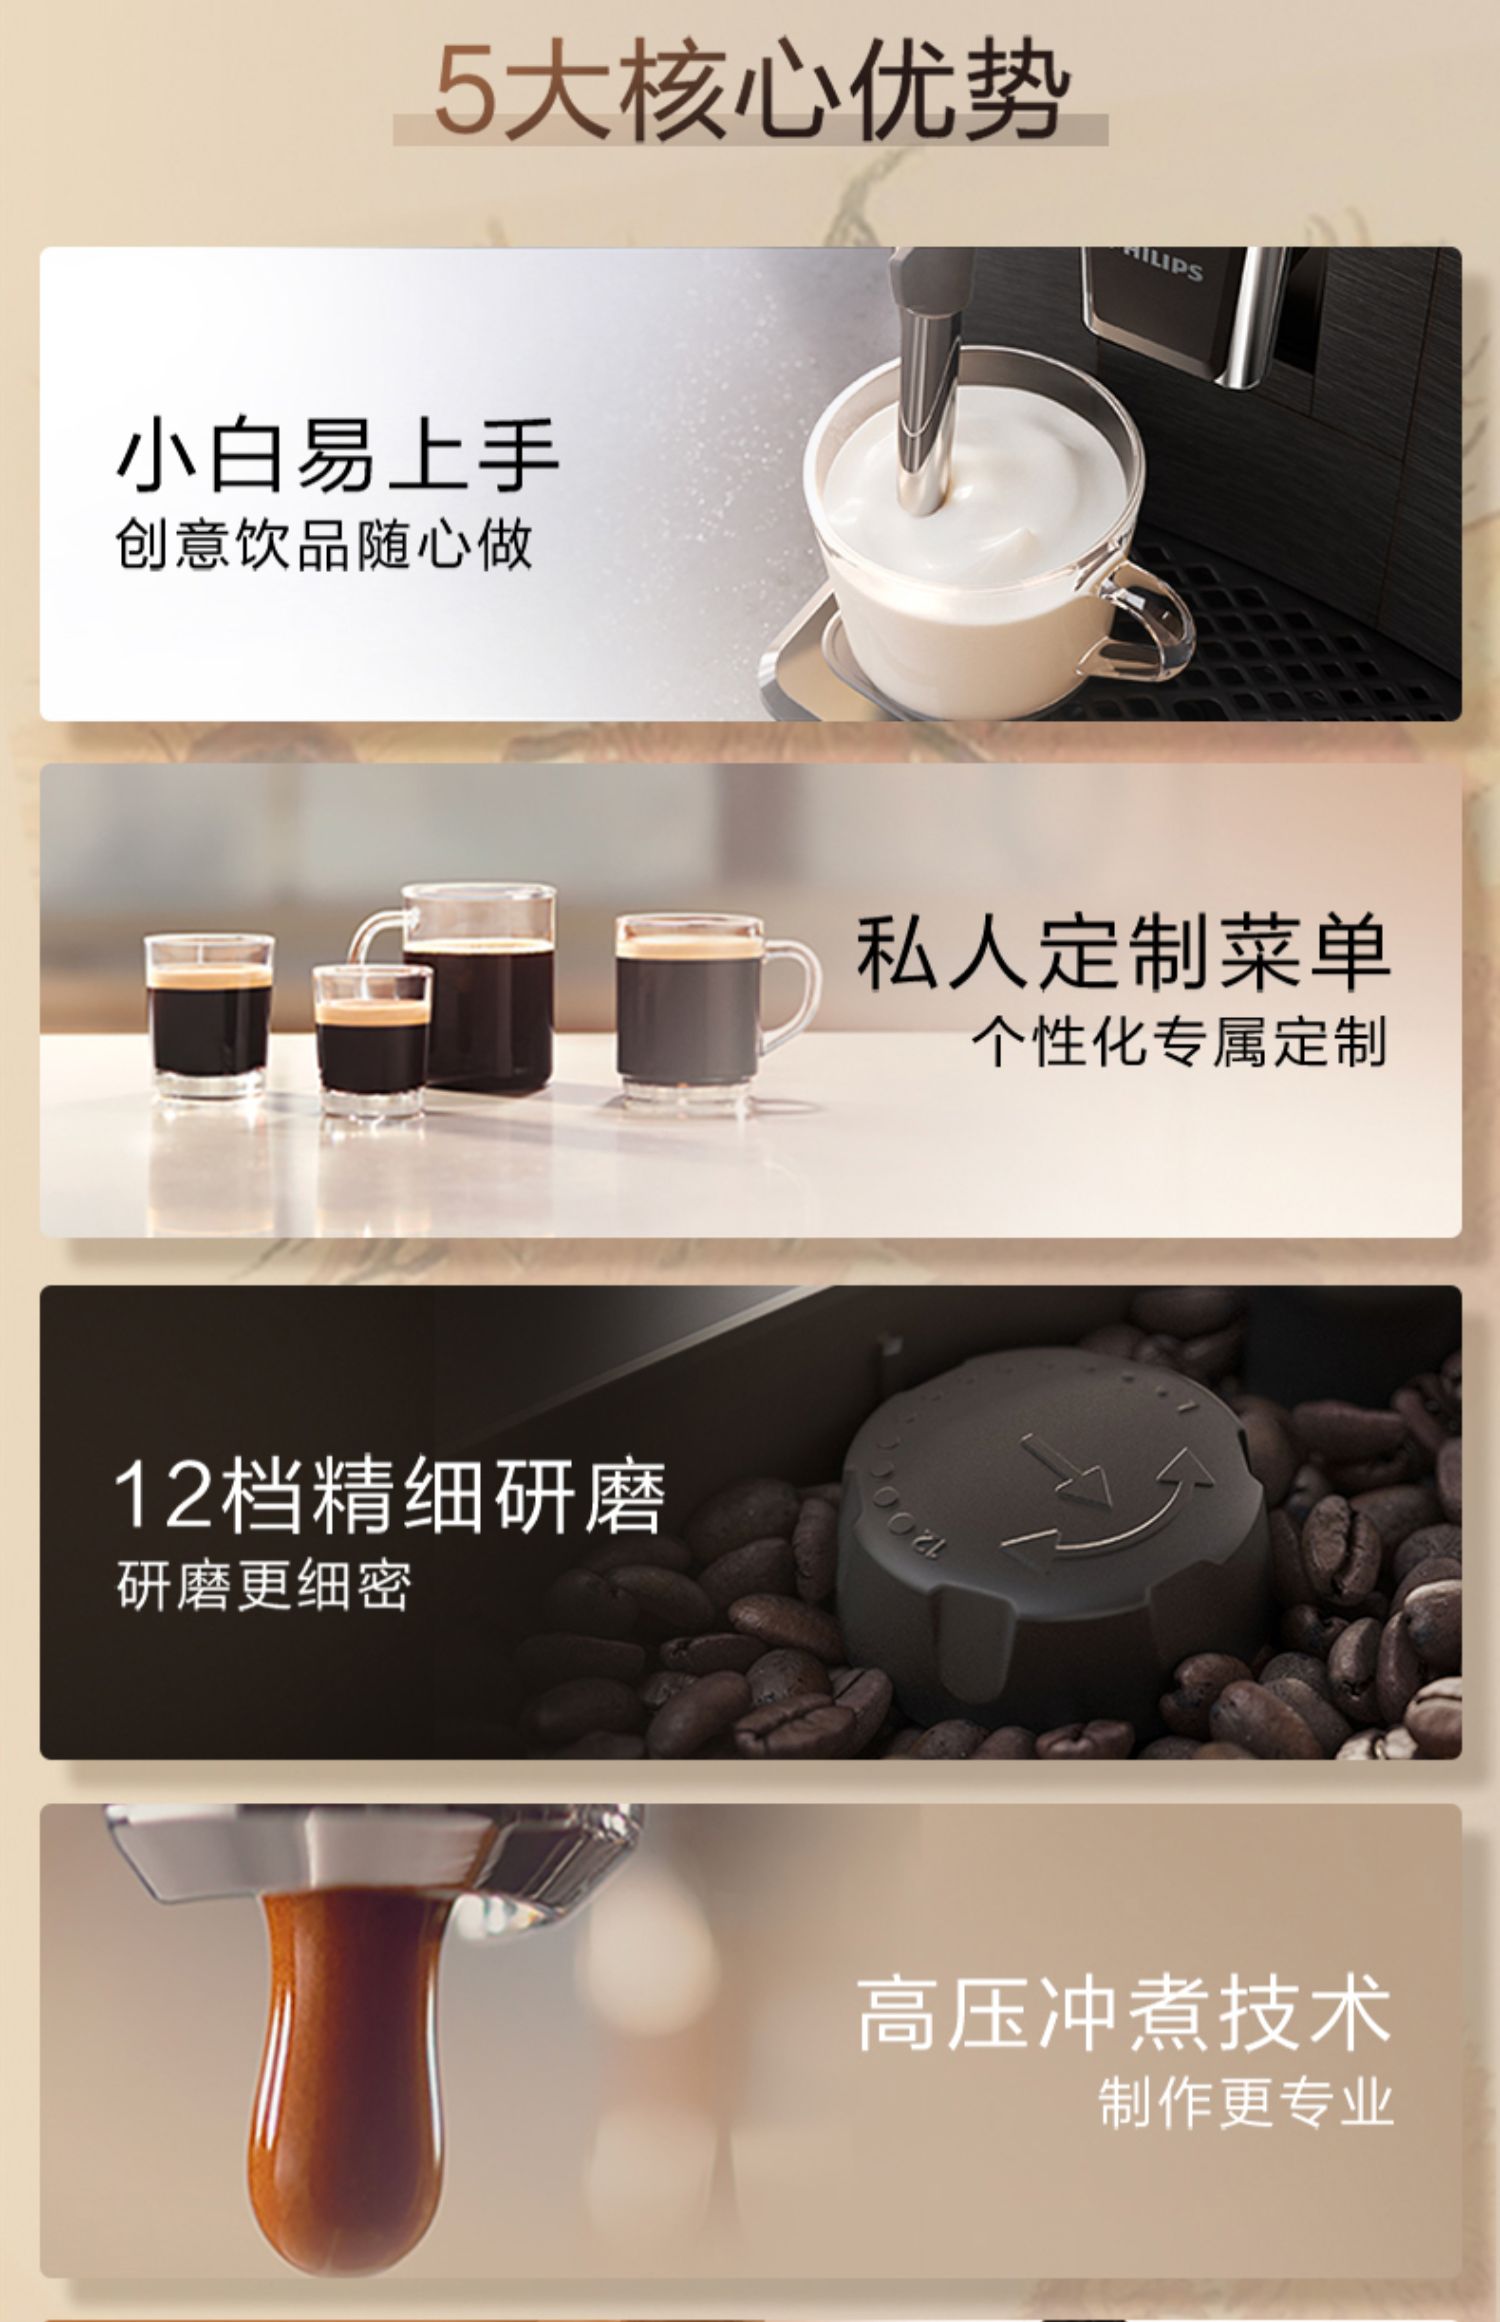 自動咖啡機飛利浦黑珍珠意式全自動咖啡機EP1221家用小型便捷咖啡研磨一體機